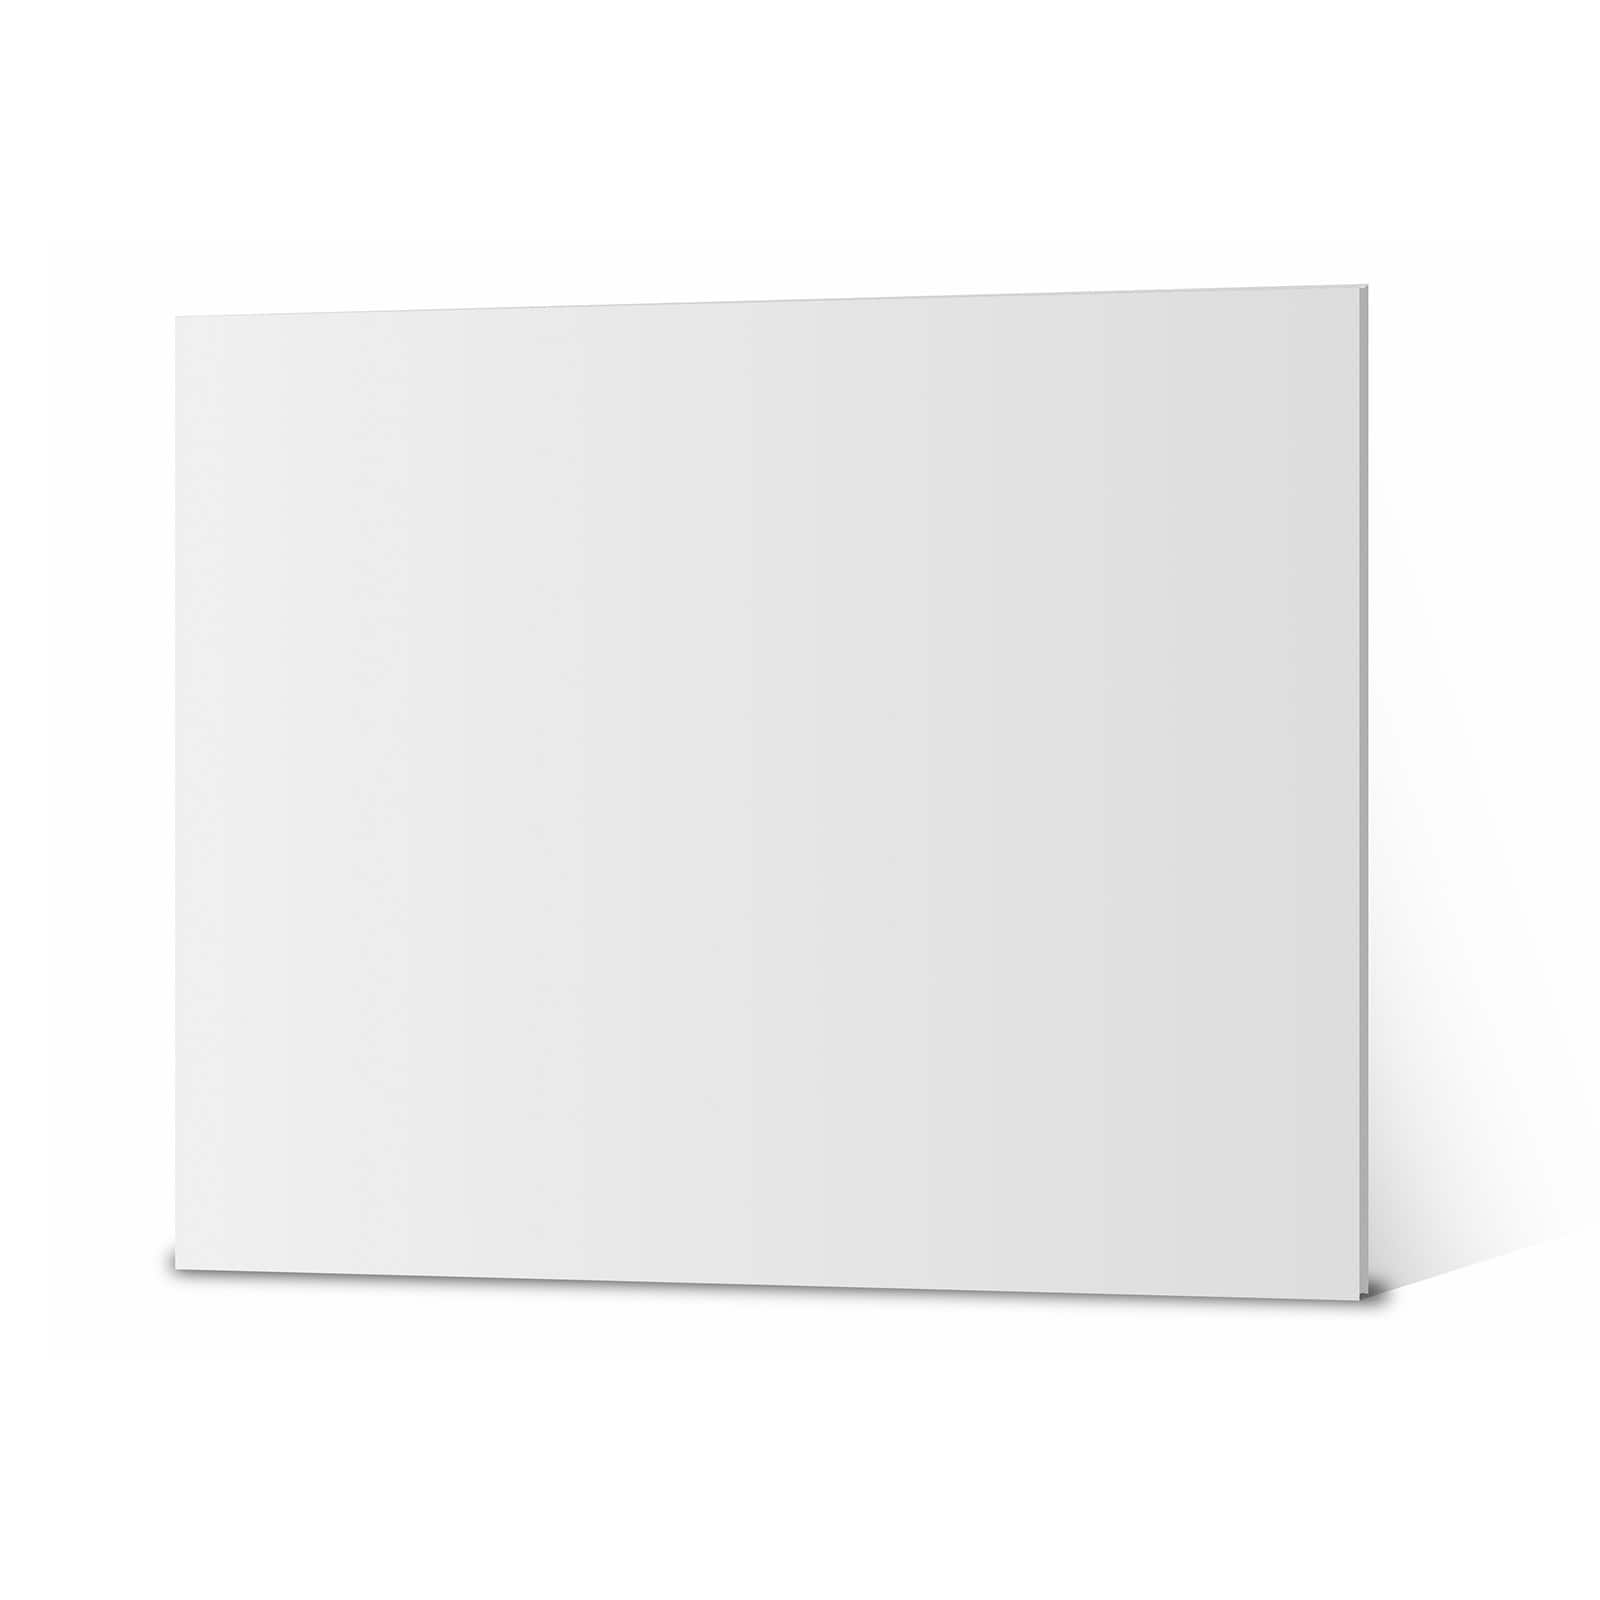 20 x 30 White Foam Board